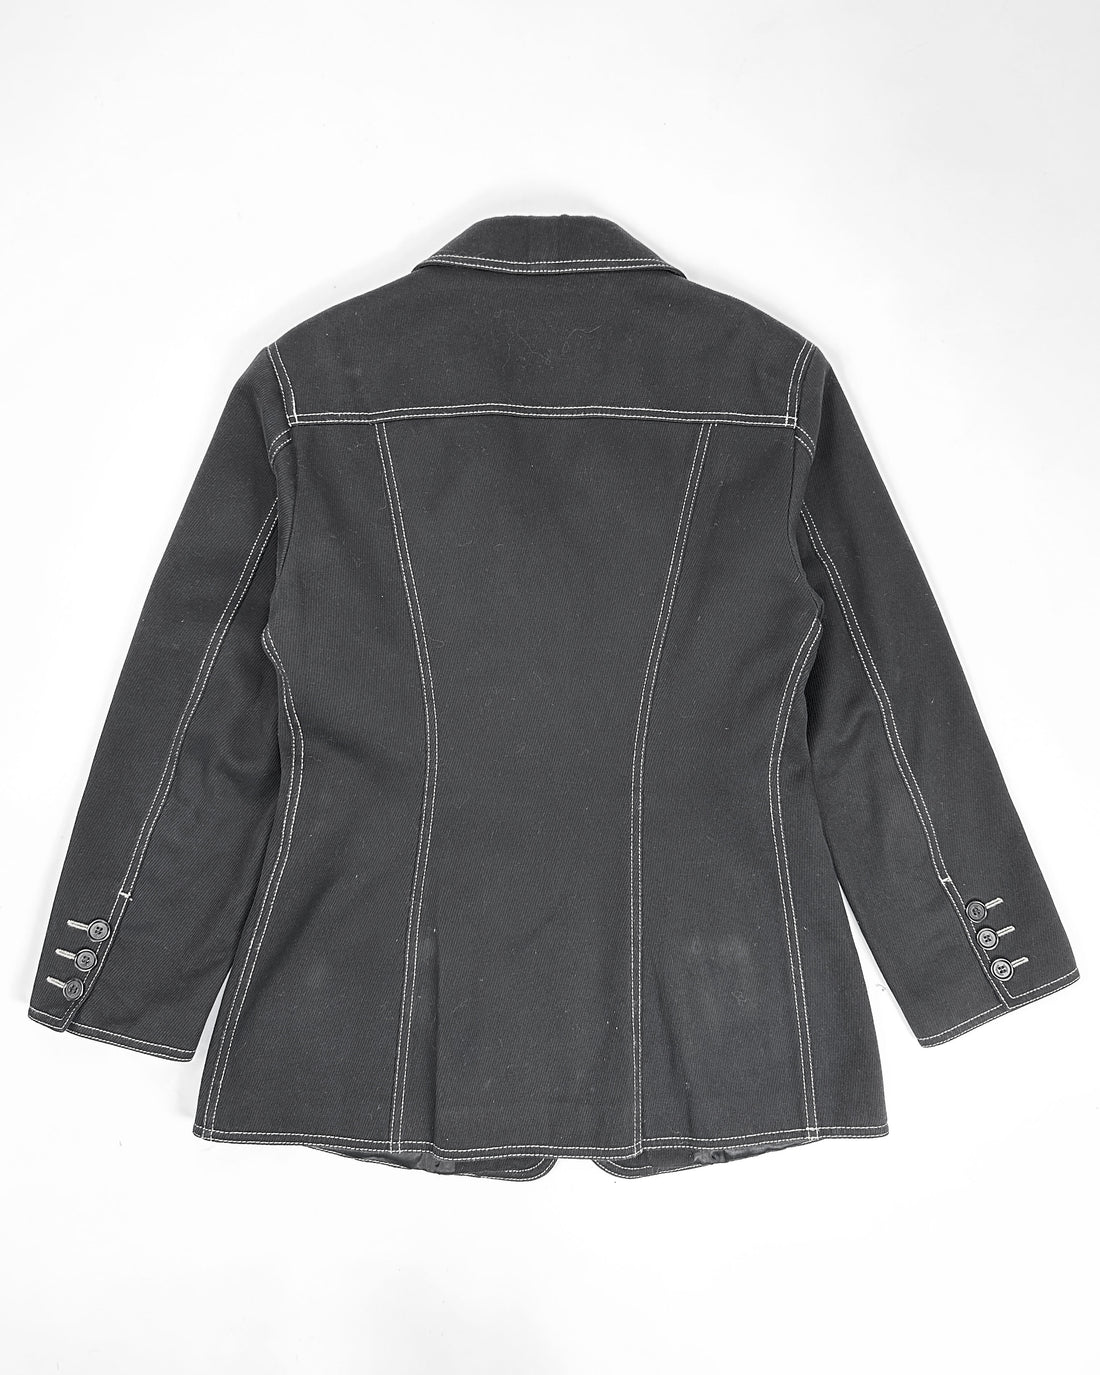 Moschino Dark Denim Straight Jacket 1990's